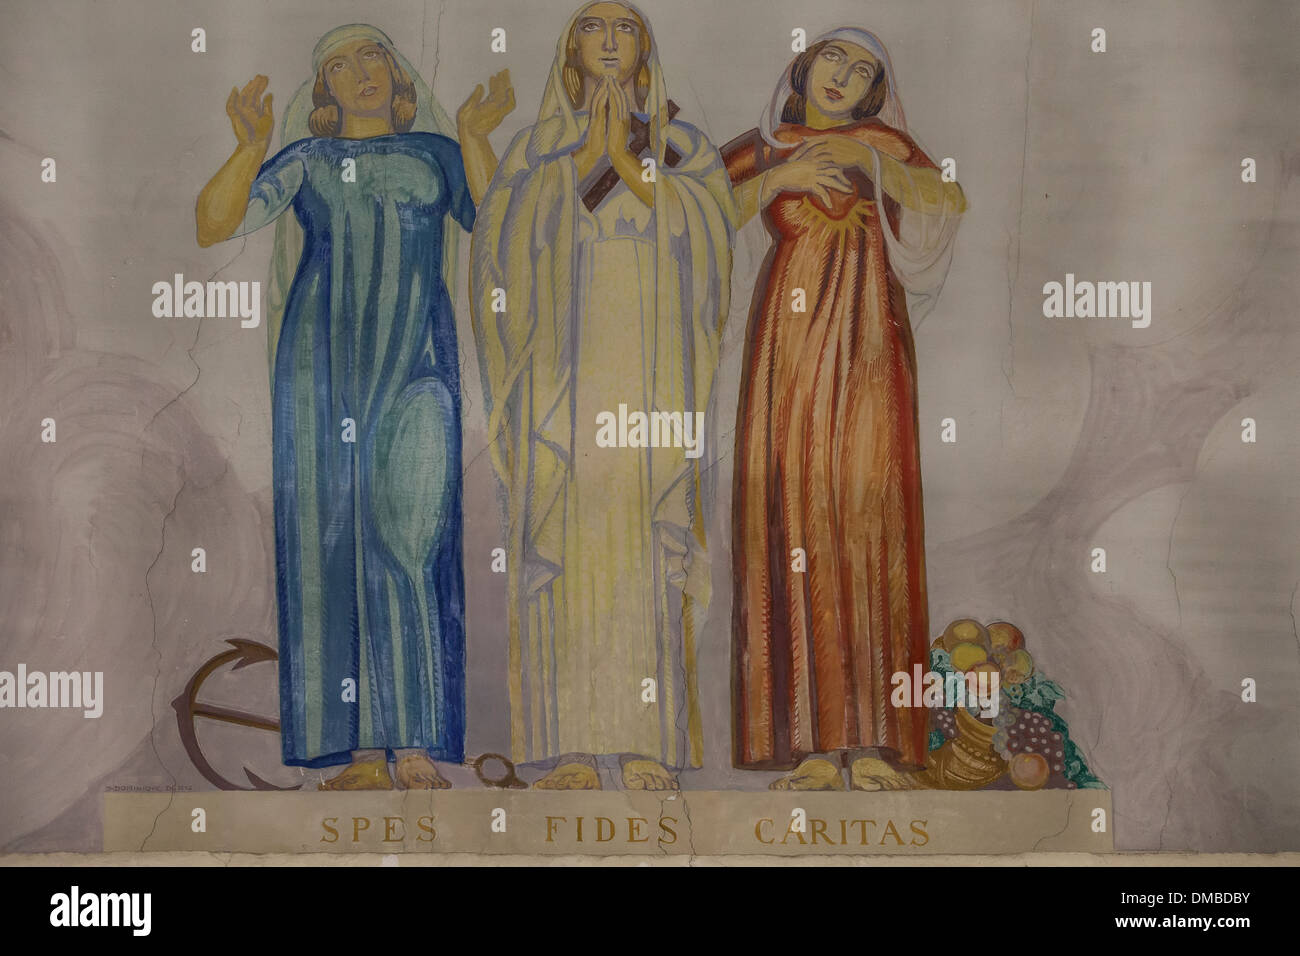 Las virtudes teologales fotografías e imágenes de alta resolución - Alamy